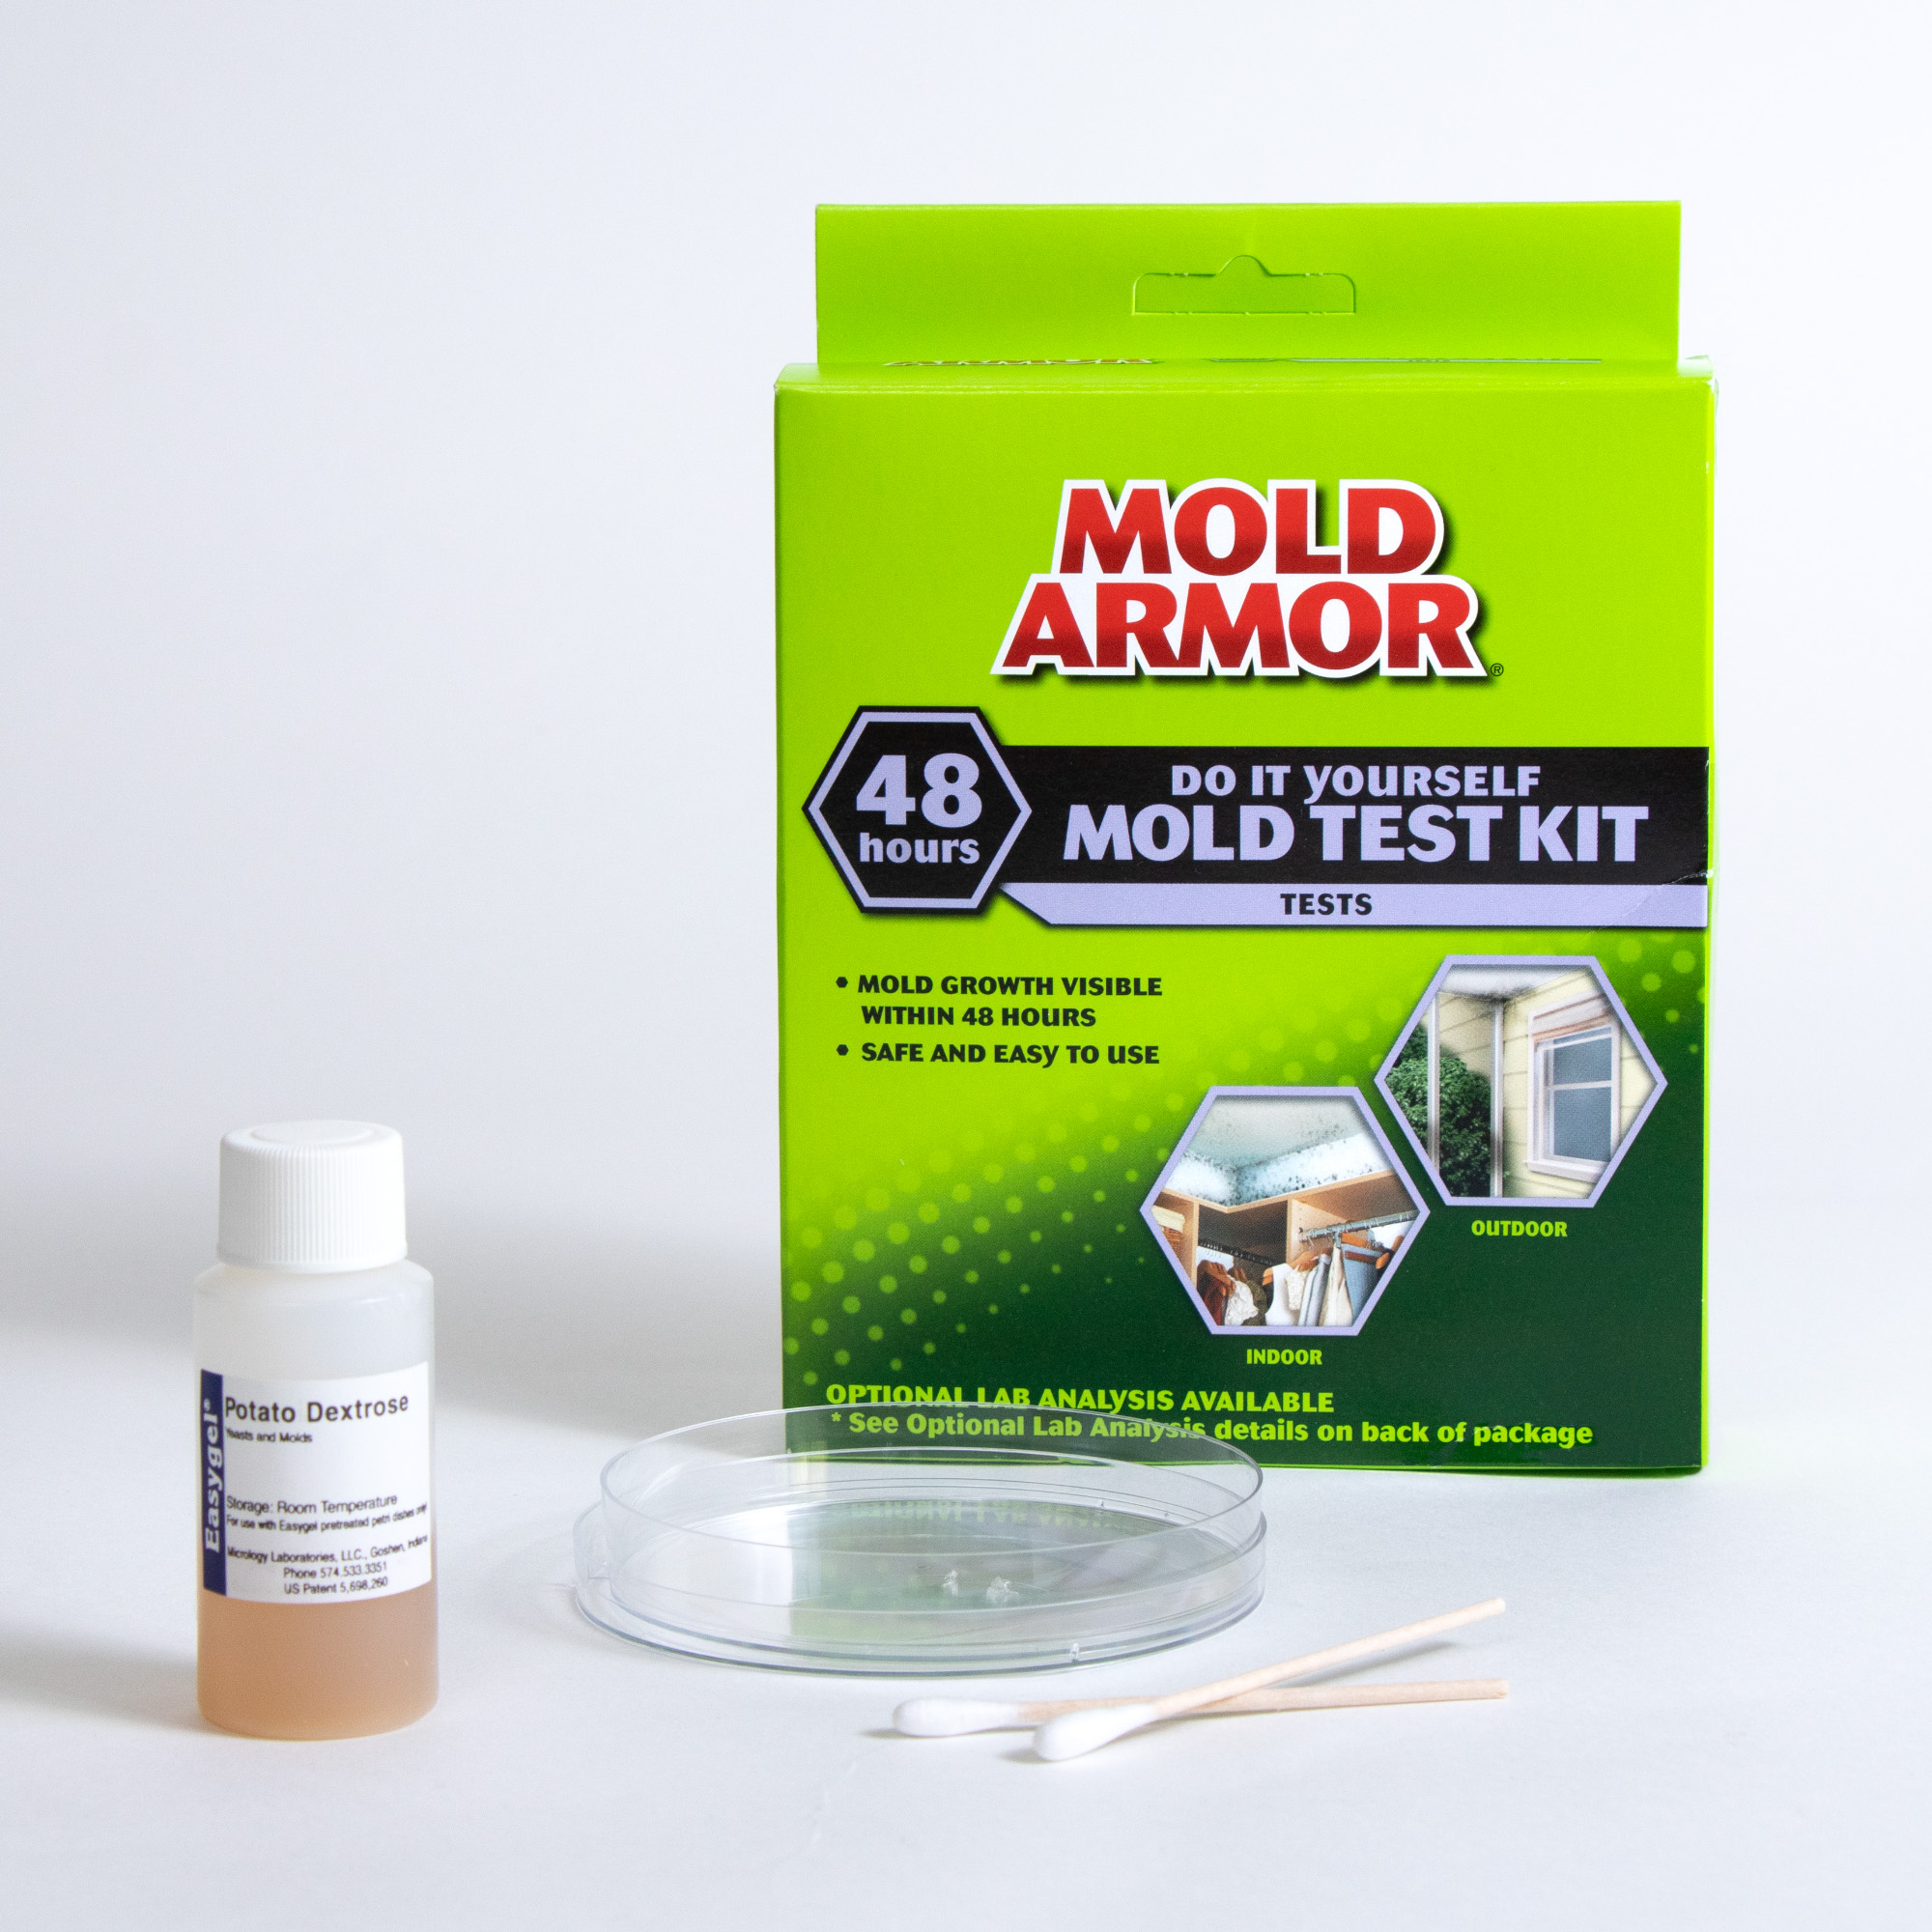 MOLD ARMOR Do It Yourself Mold Test Kit - Mold Armor